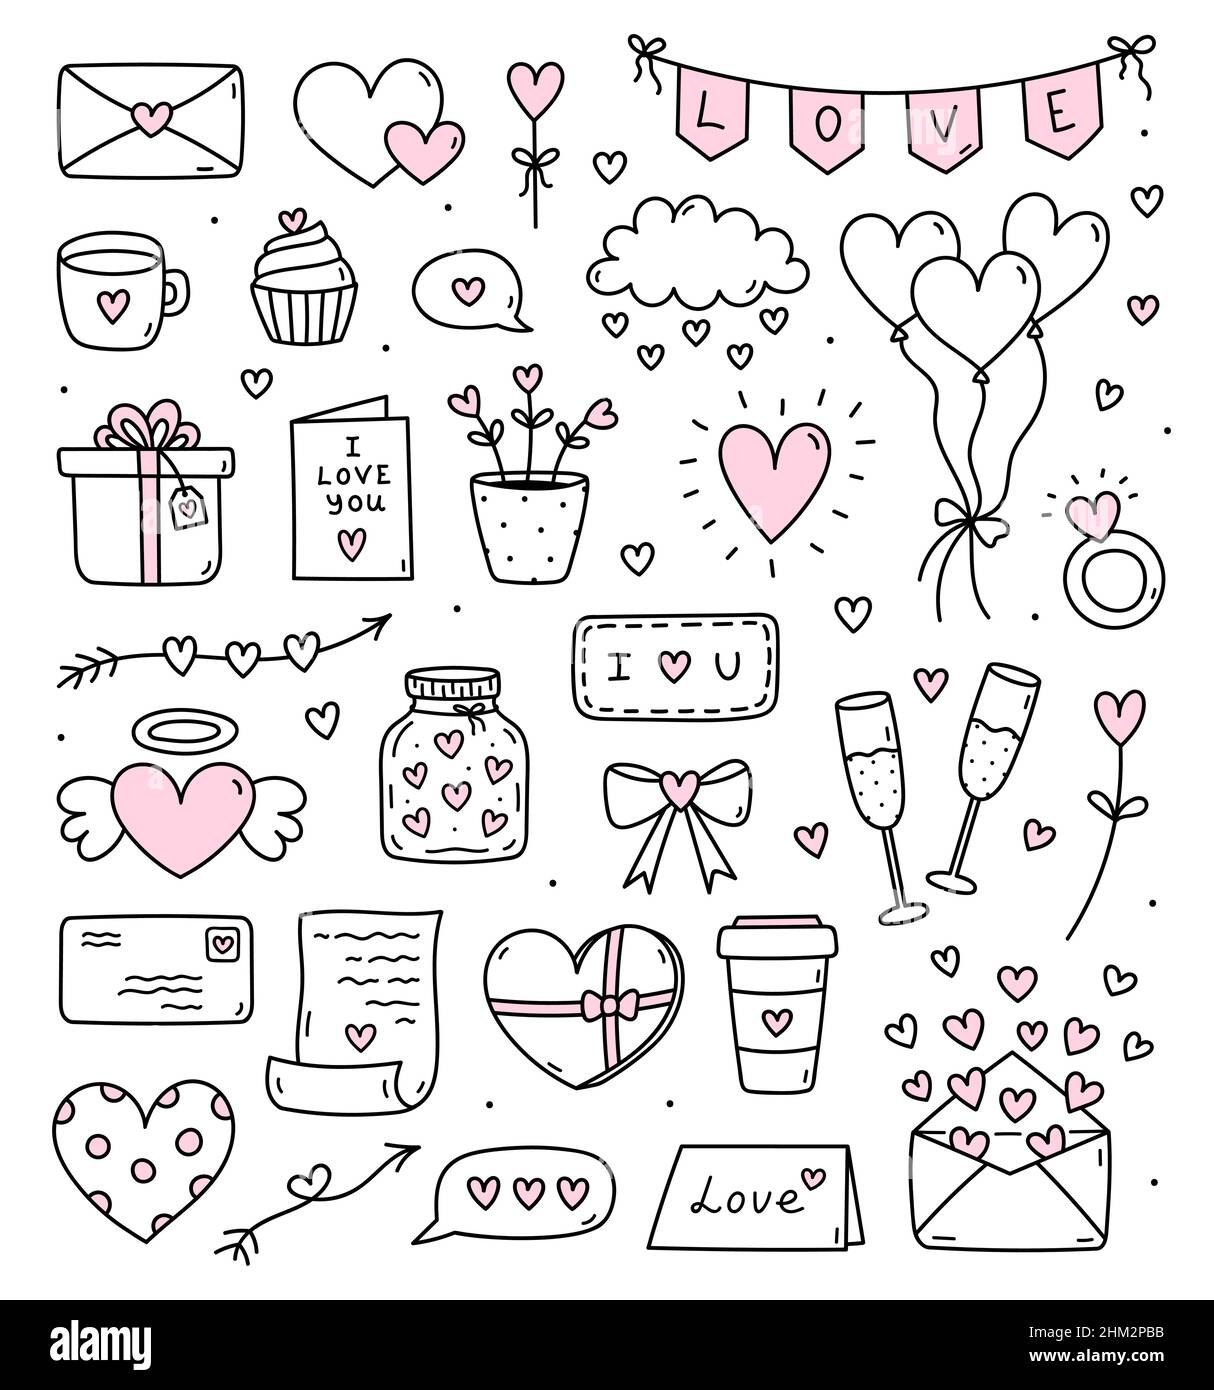 Lindo conjunto de fideos para el día de San Valentín - cartas y cartas de  amor, corazones, globos, regalos, champán, bunting y otros. Ilustración  vectorial dibujada a mano. Perfecto para diseños, pegatinas